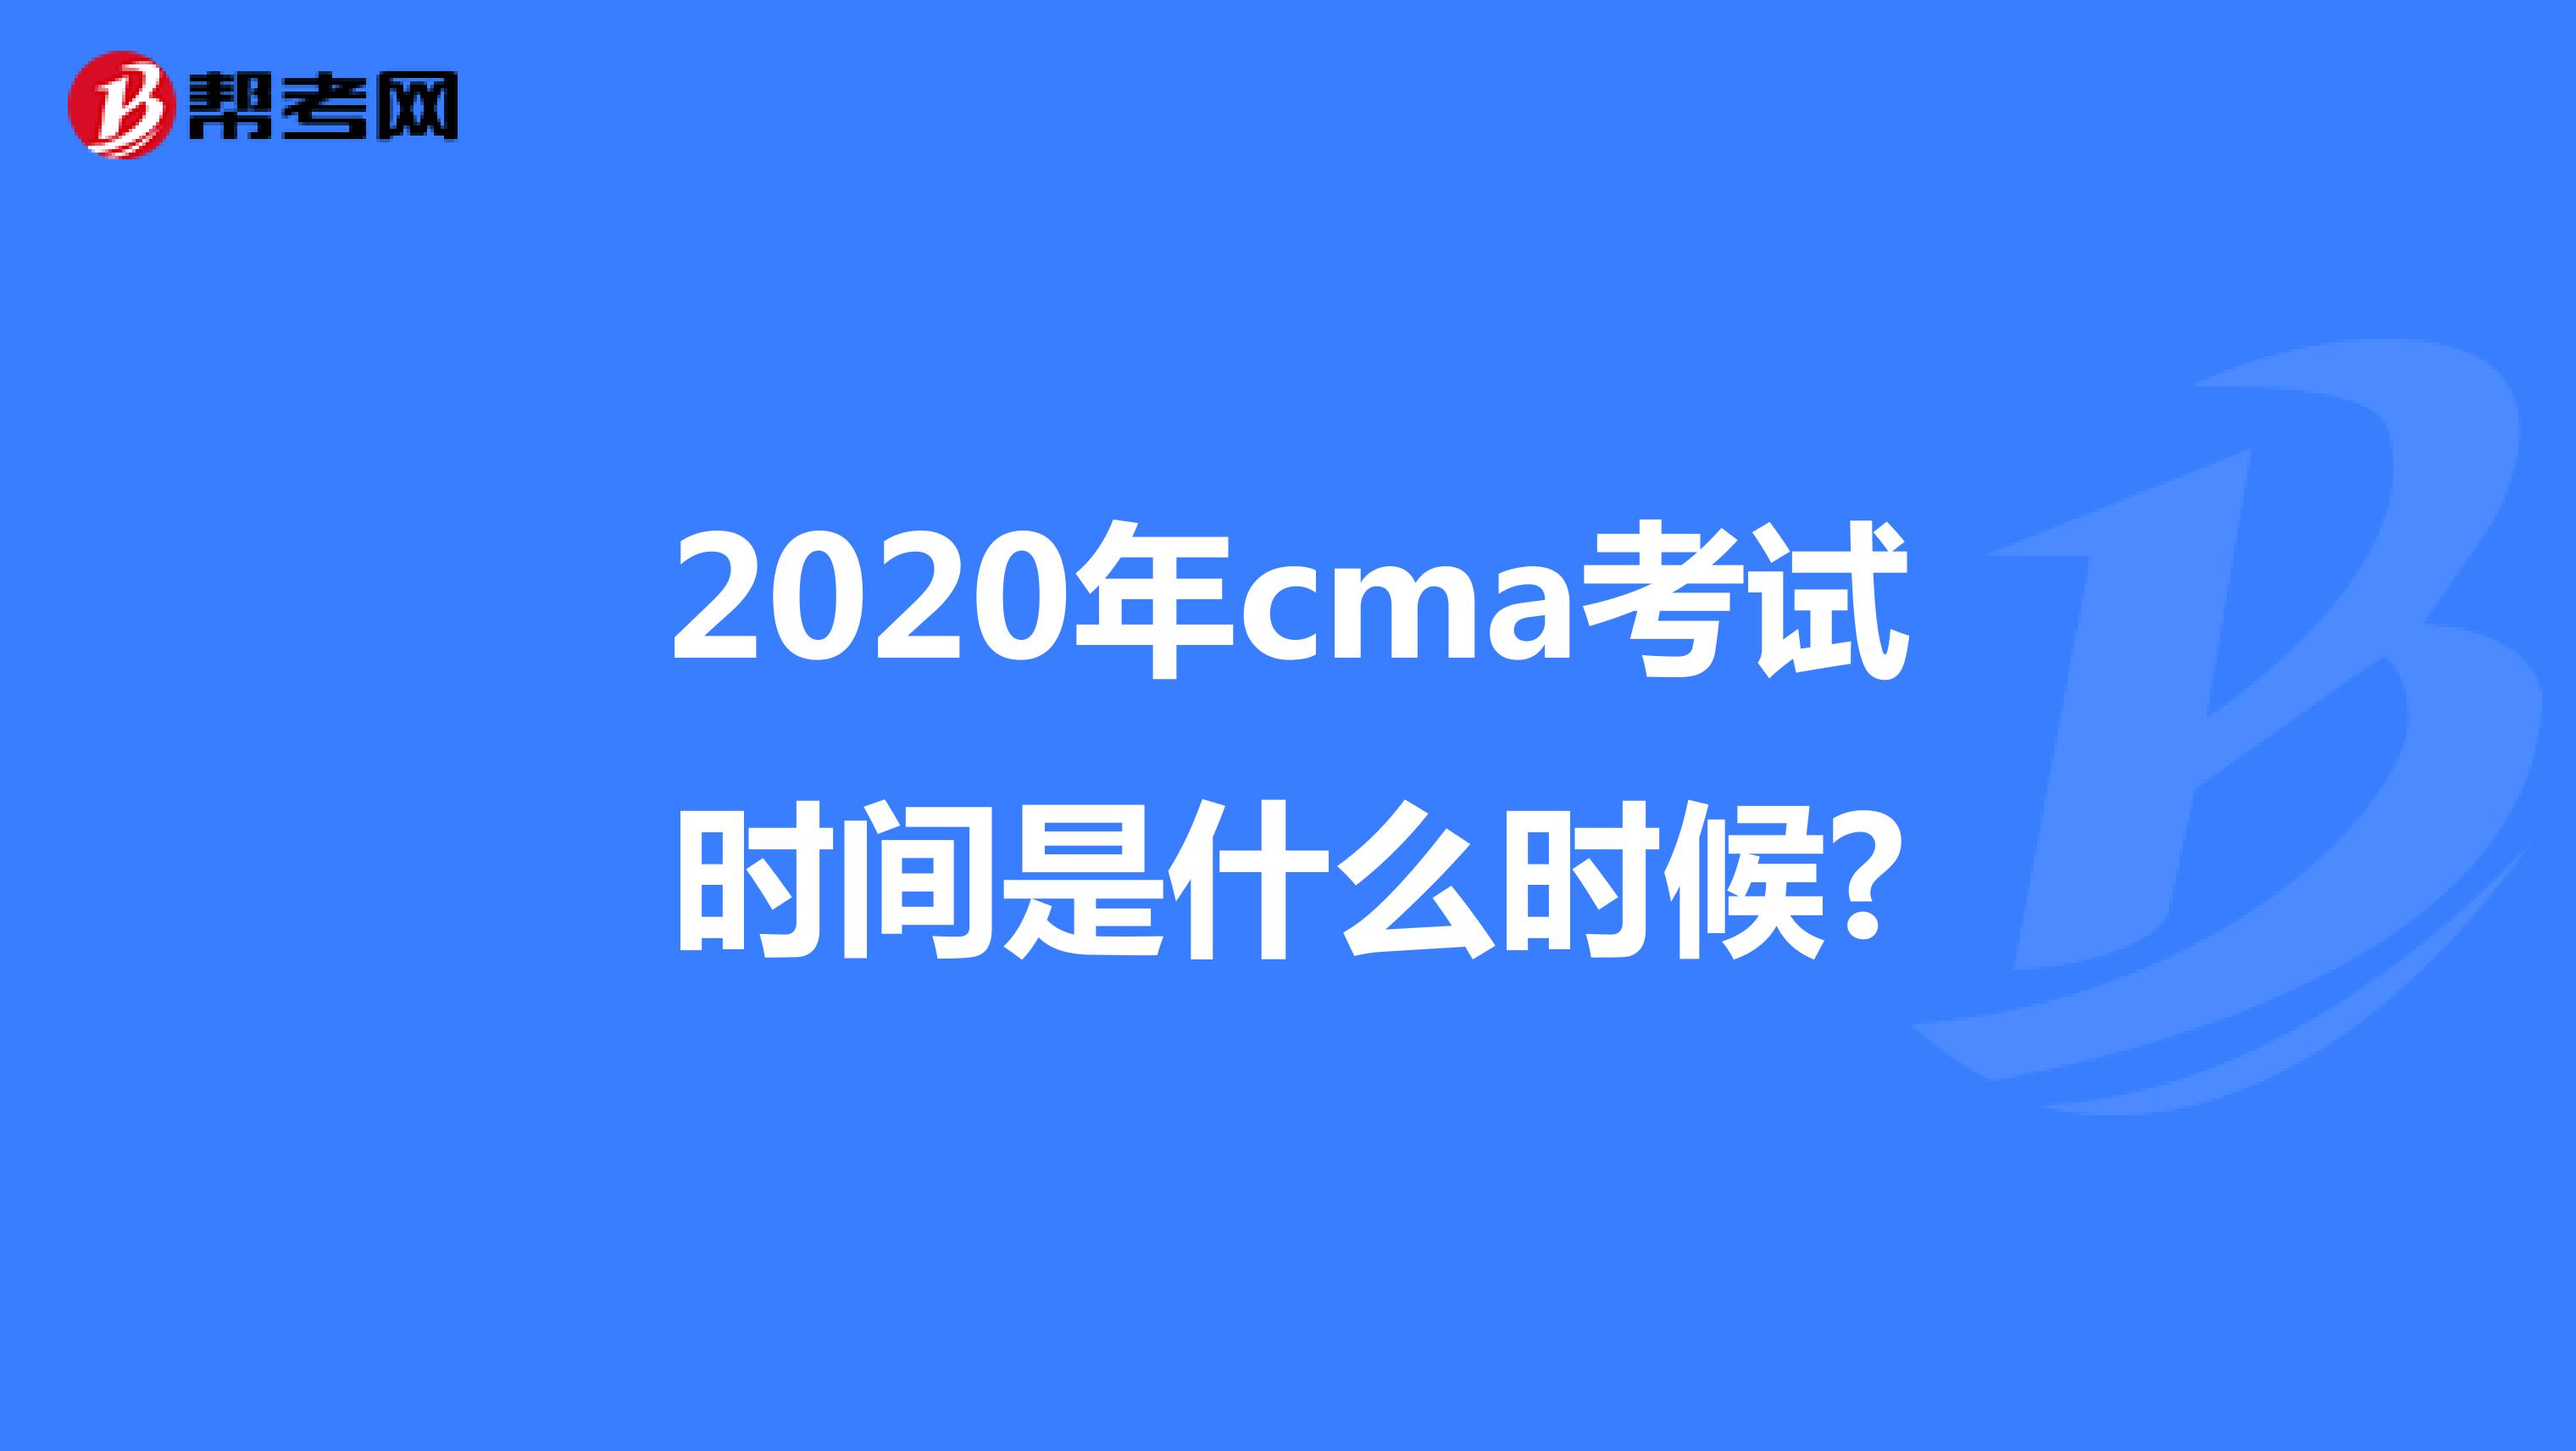 2020年cma考试时间是什么时候?